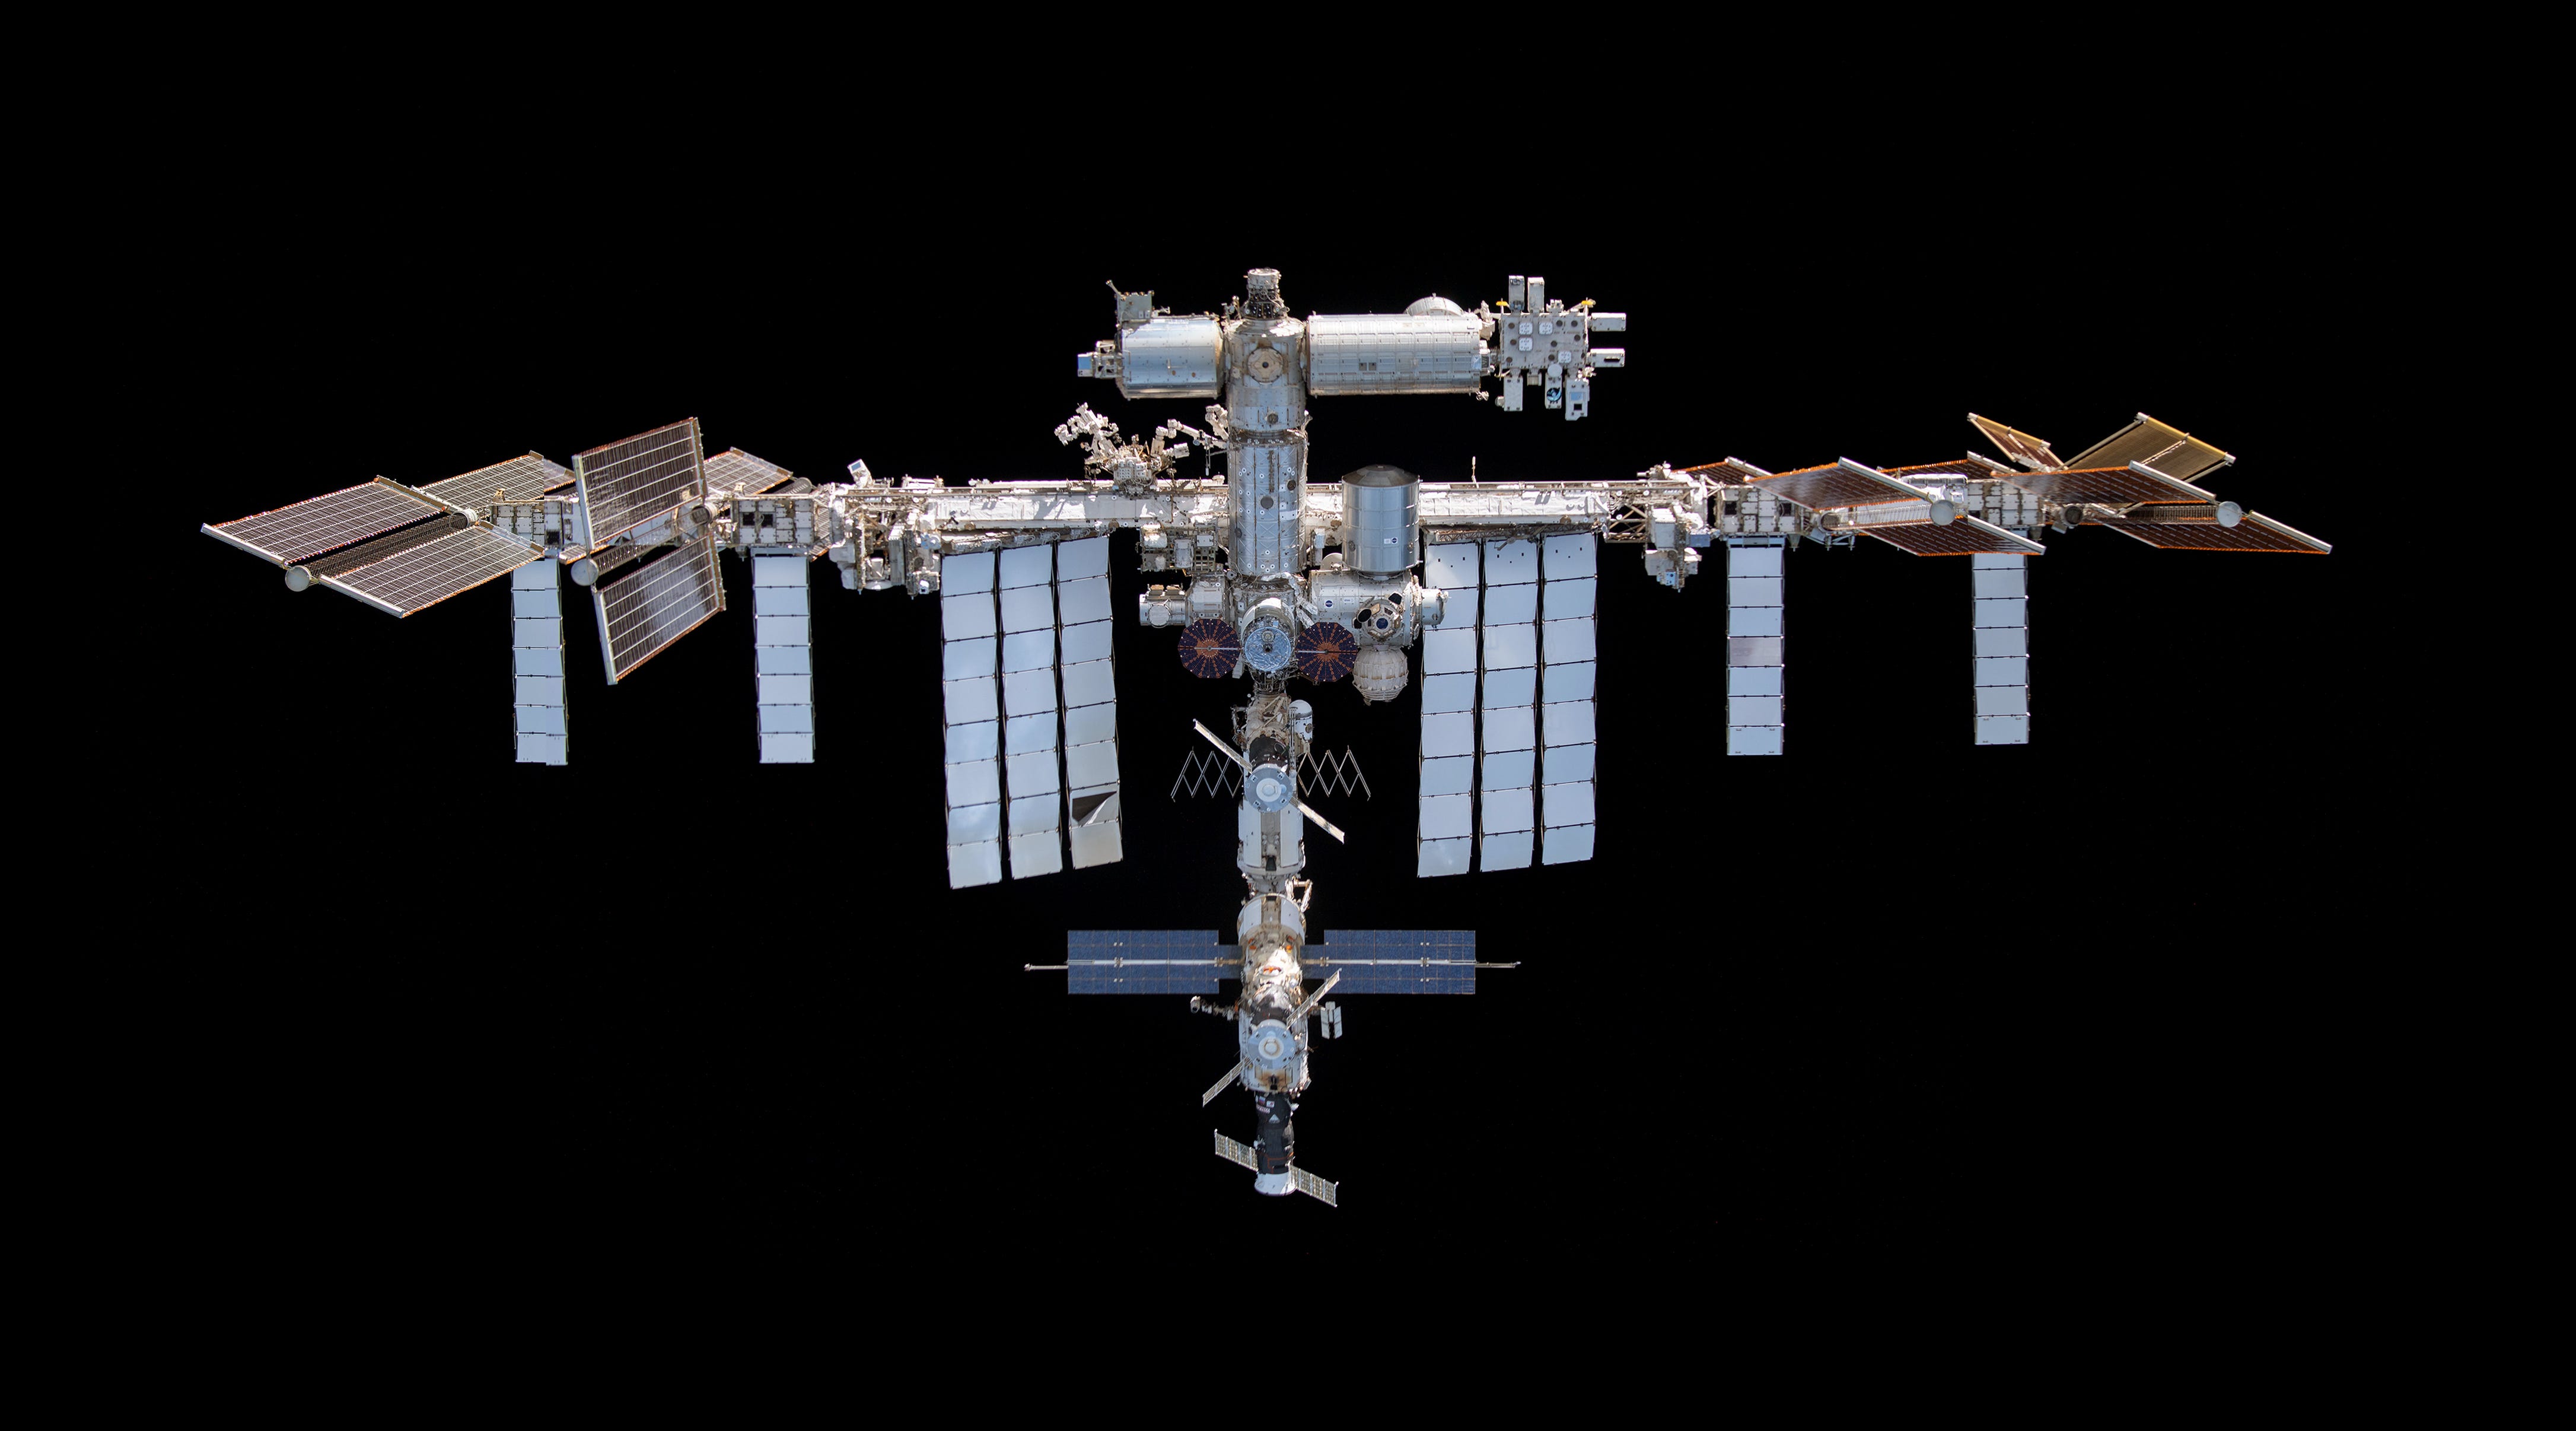 Ein Blick auf die Internationale Raumstation von einem Raumschiff aus nach dem Abdocken im Jahr 2021.